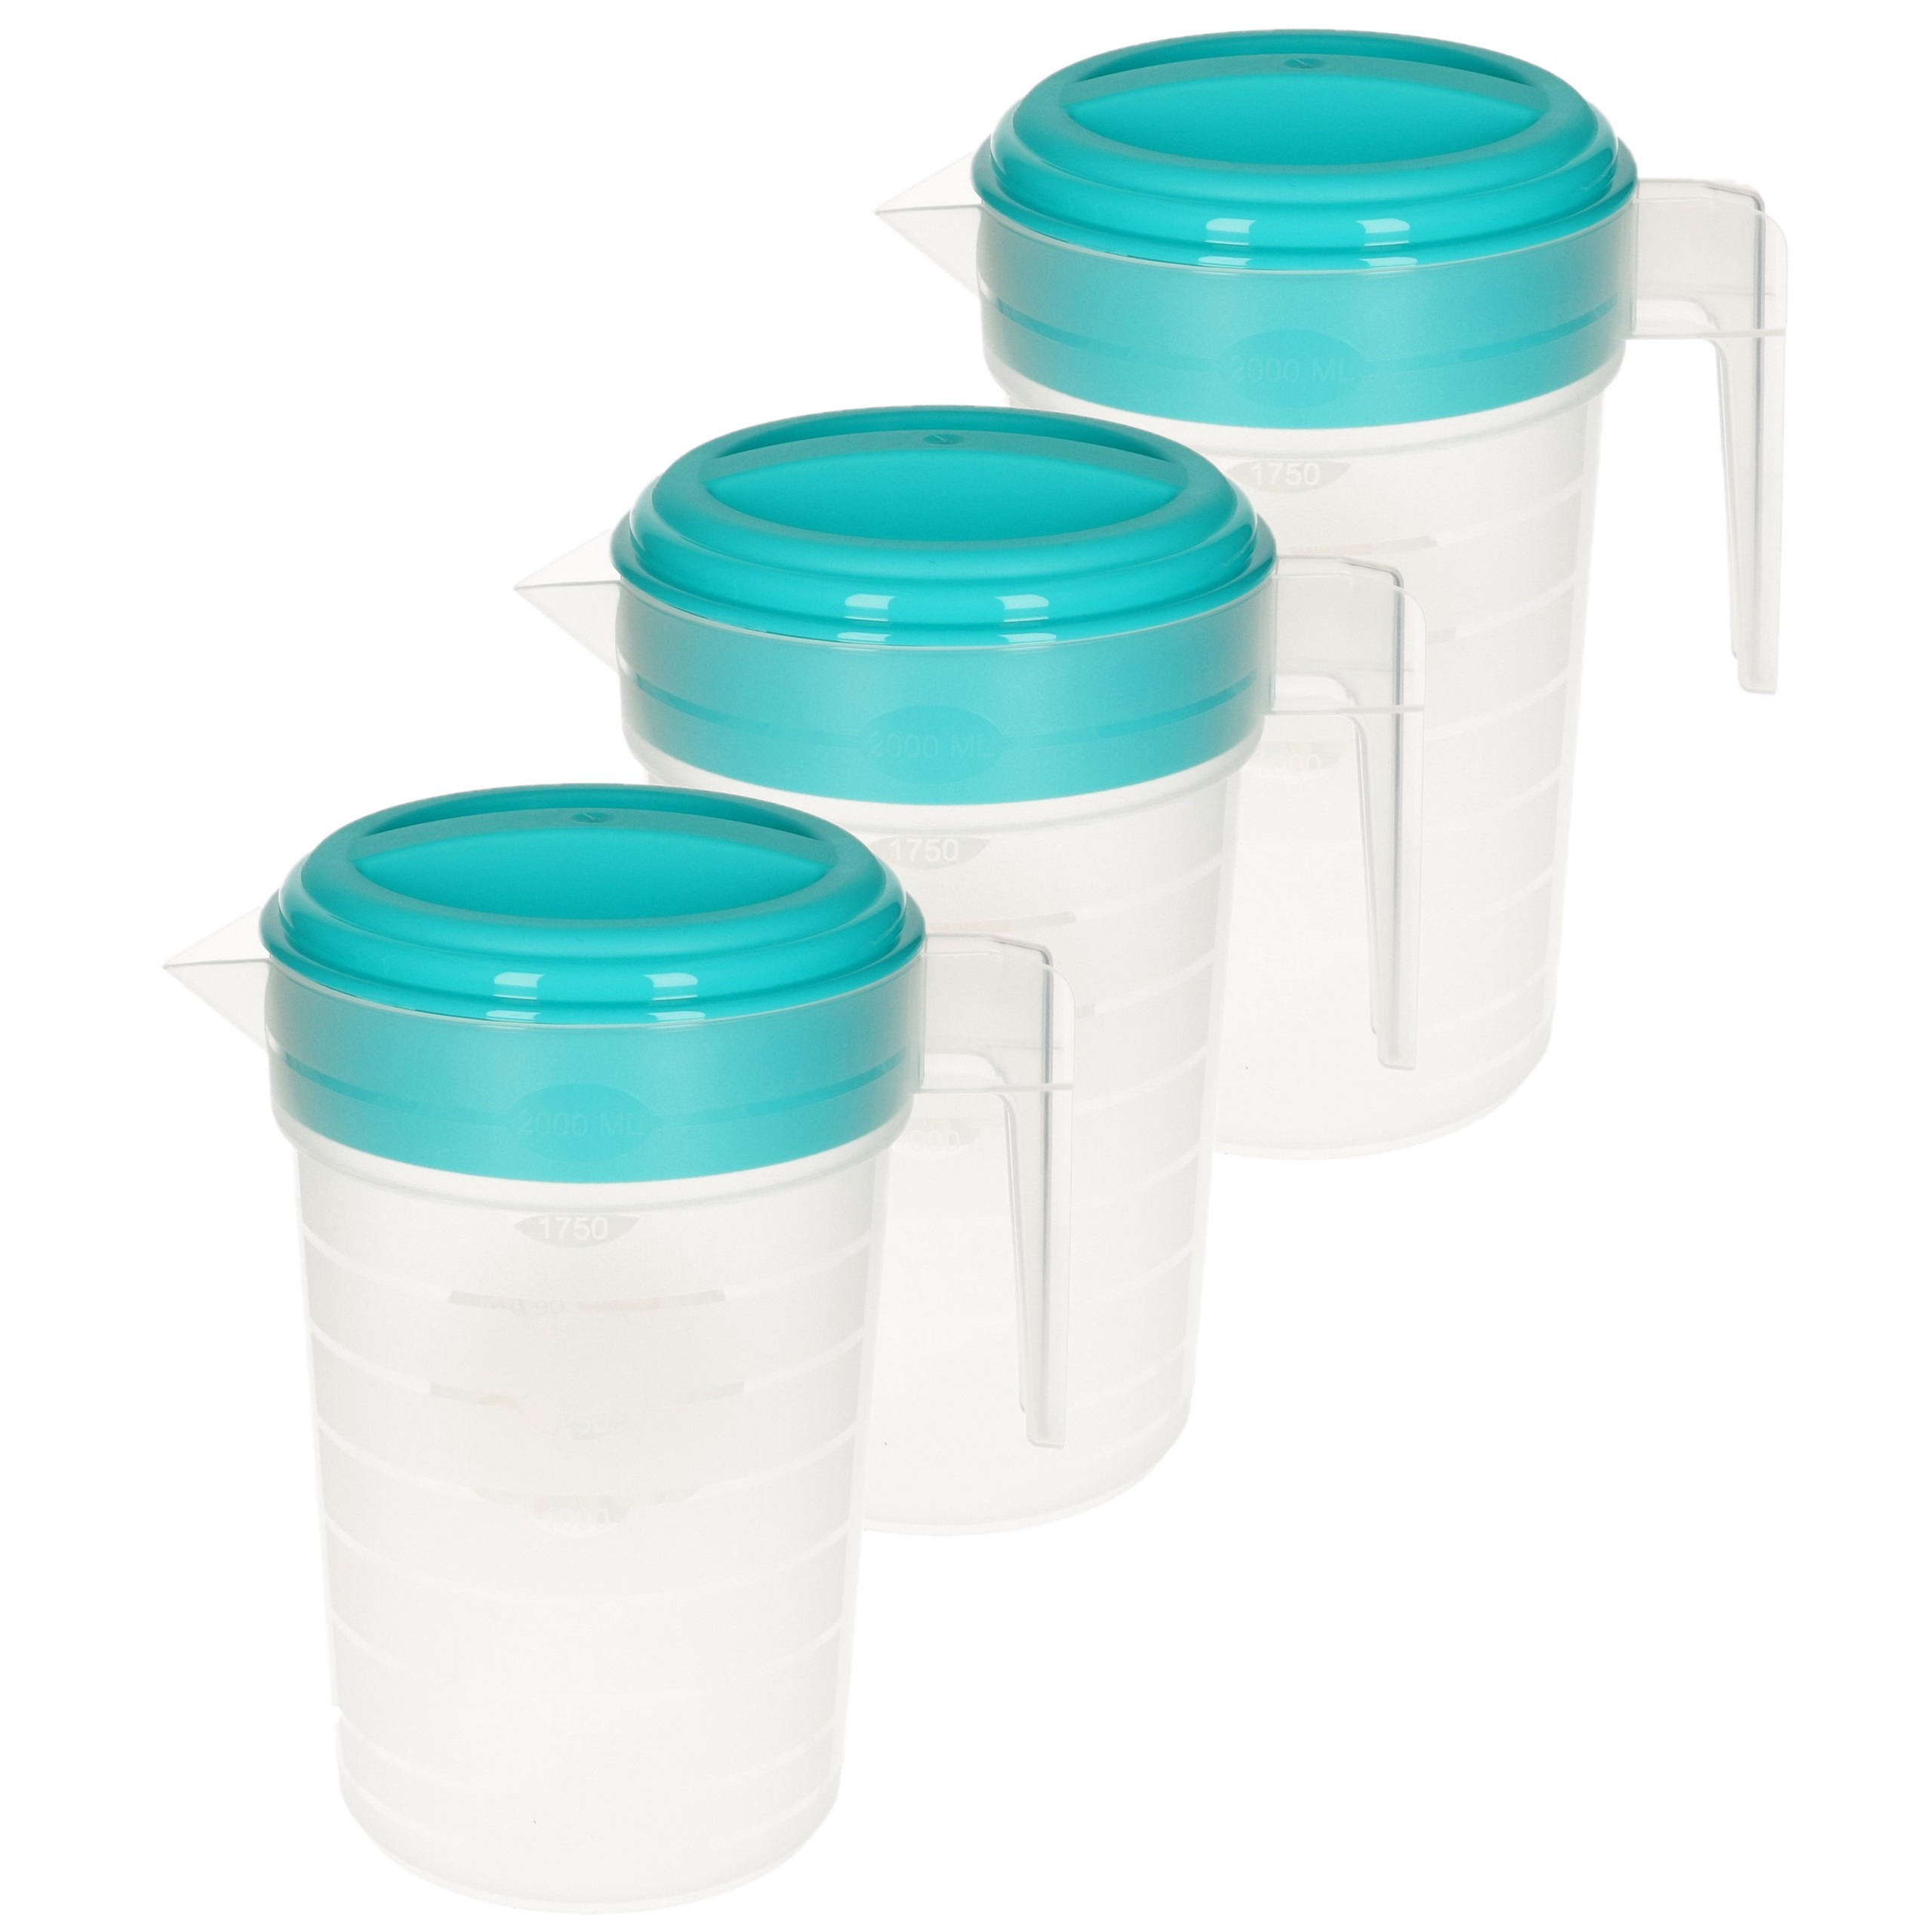 PlasticForte 3x stuks waterkan/sapkan transparant/blauw met deksel 2 liter kunststof -